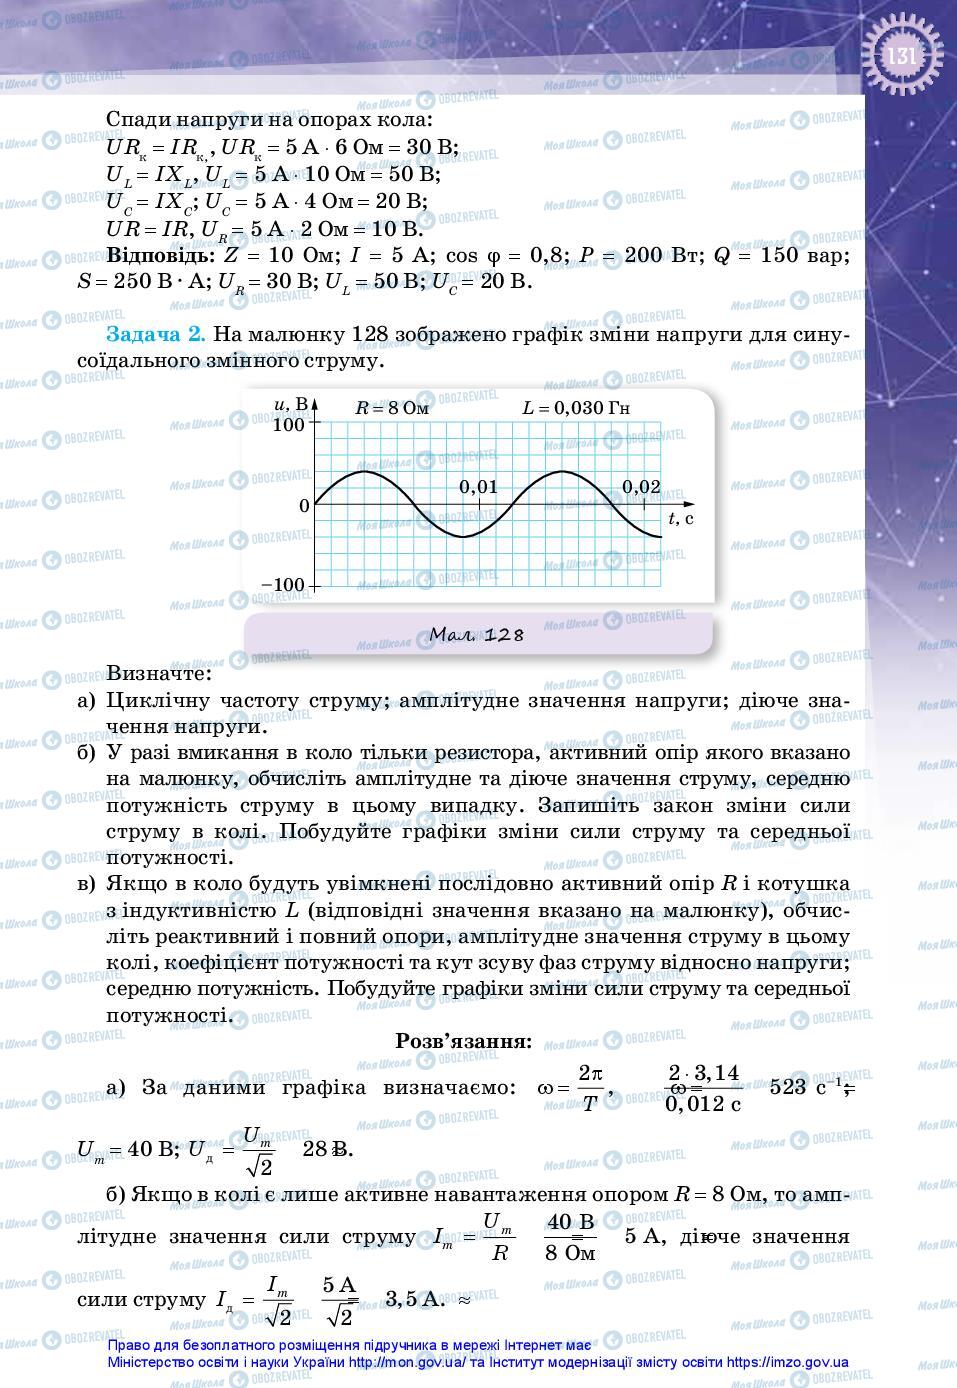 Учебники Физика 11 класс страница 131